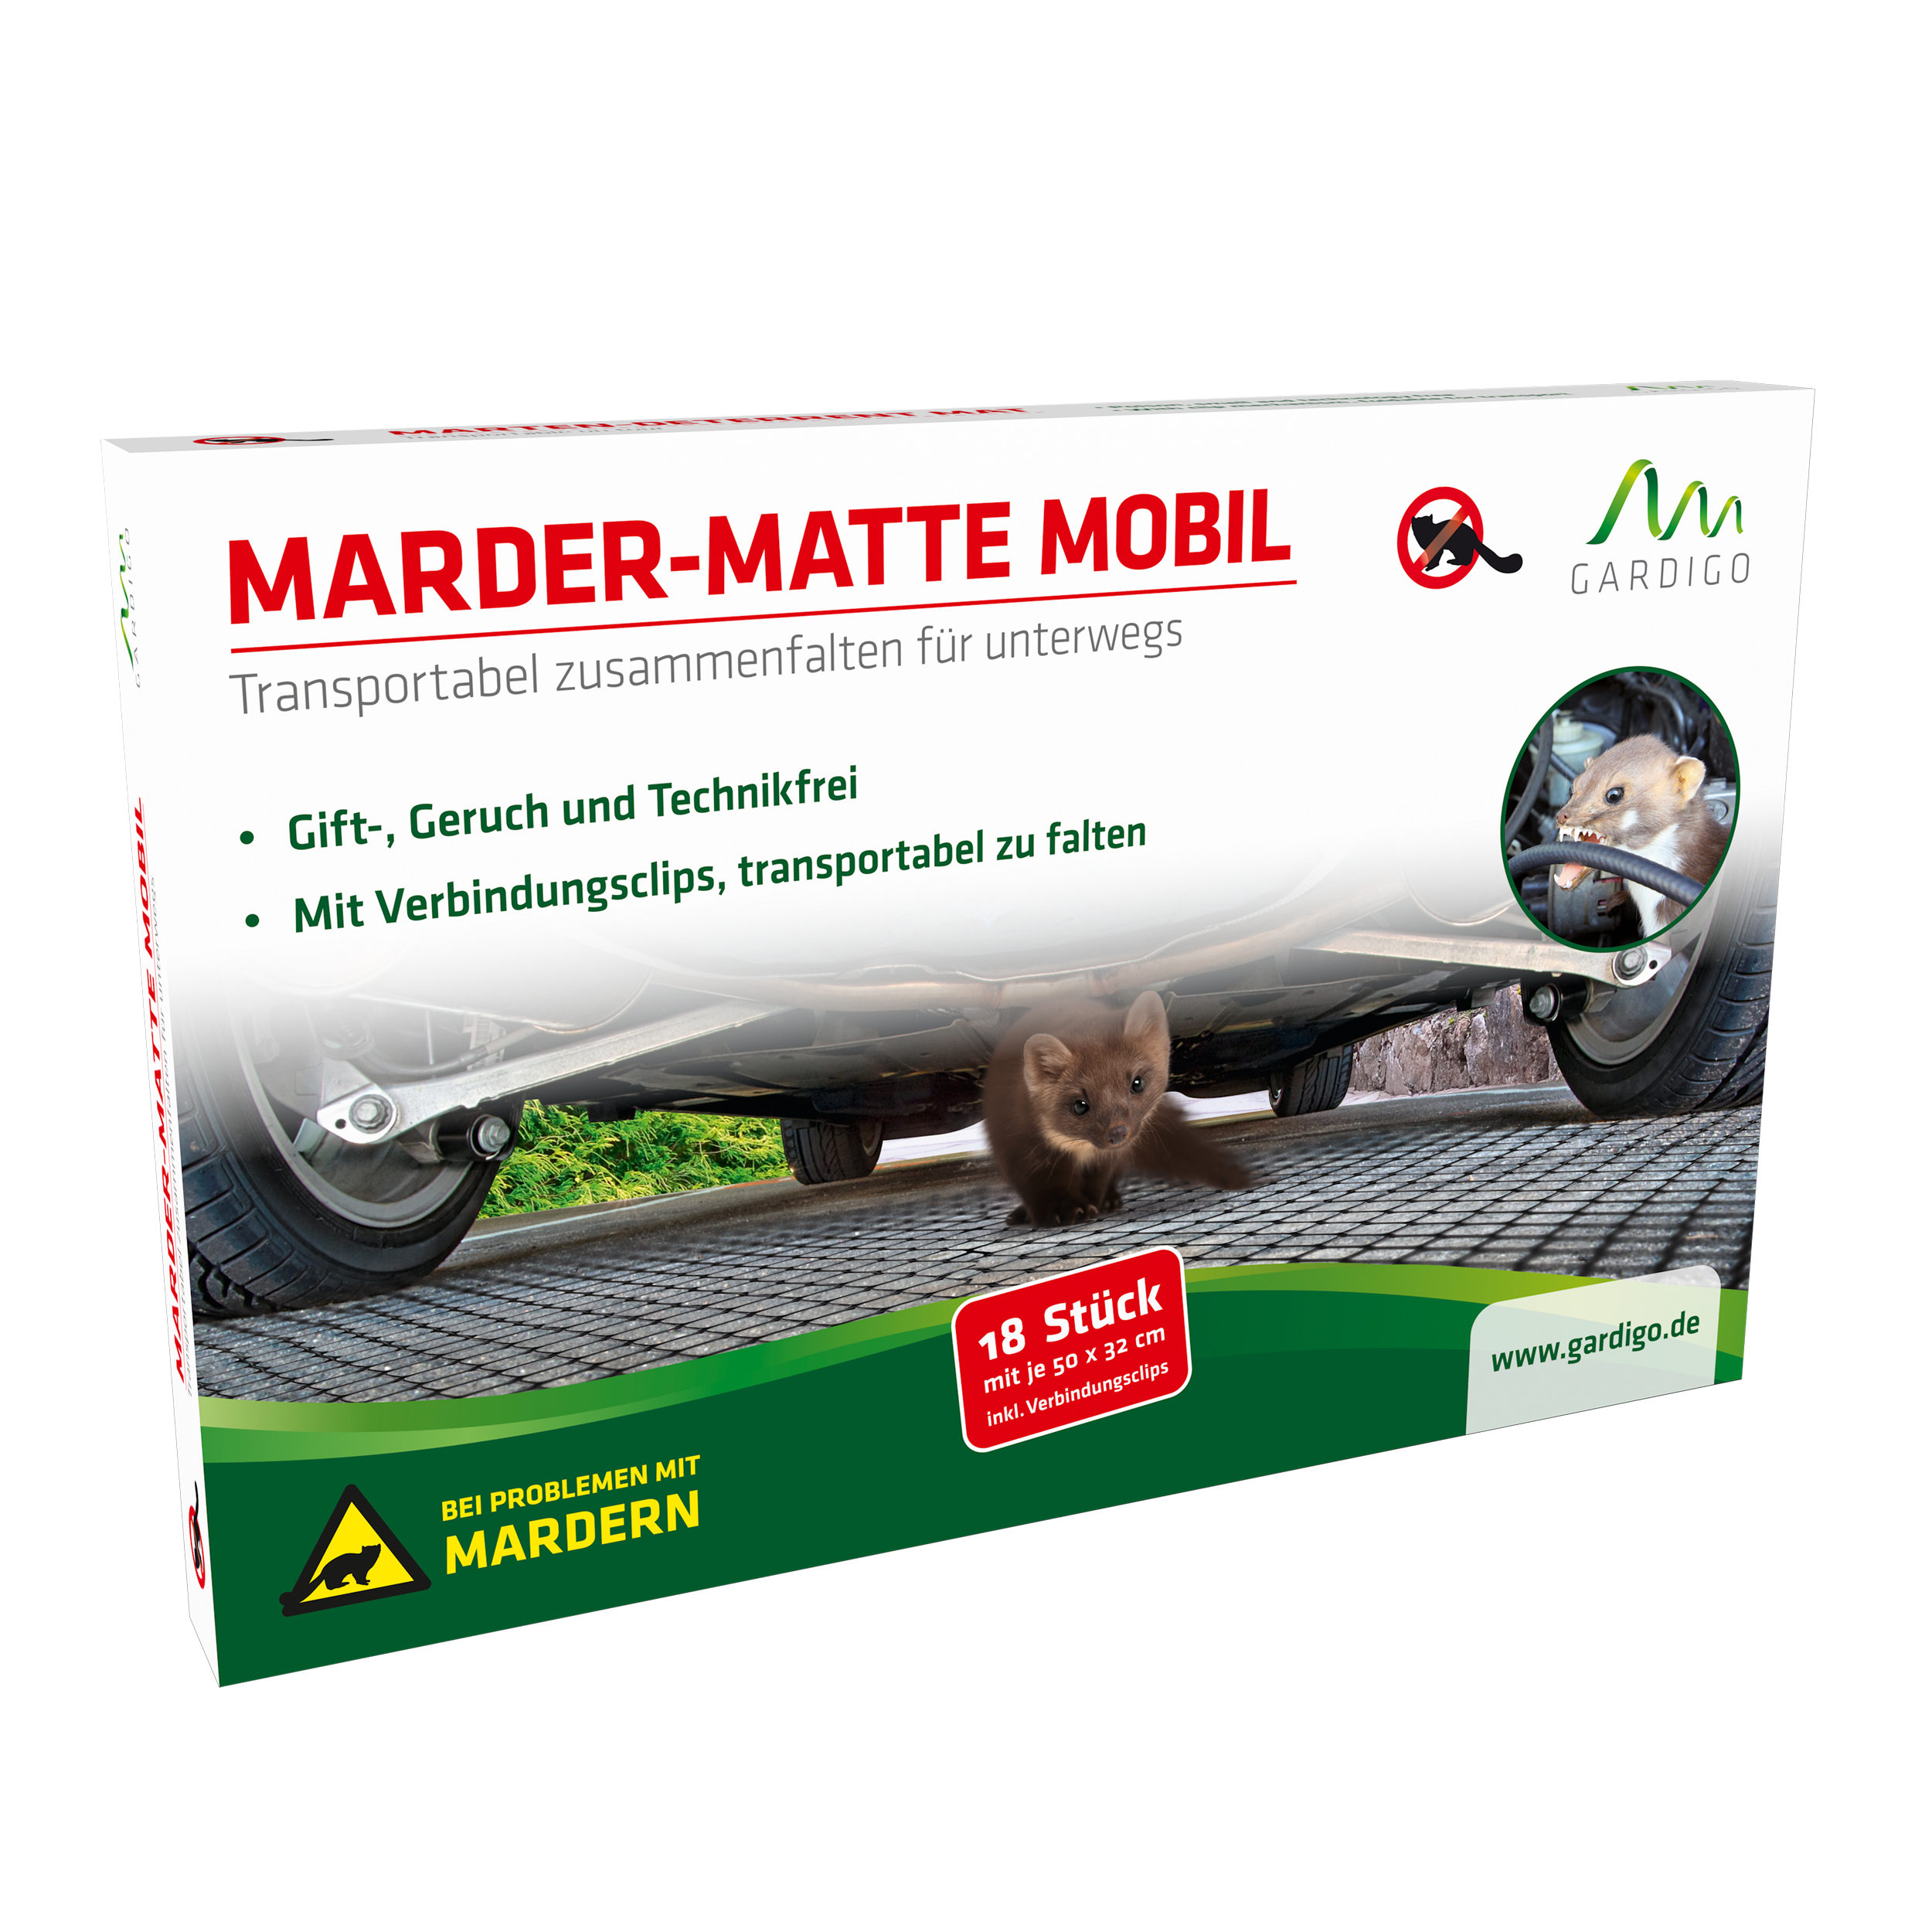 3 Anti Marder Gitter Mardergitter SET 190x150cm Marderschutz